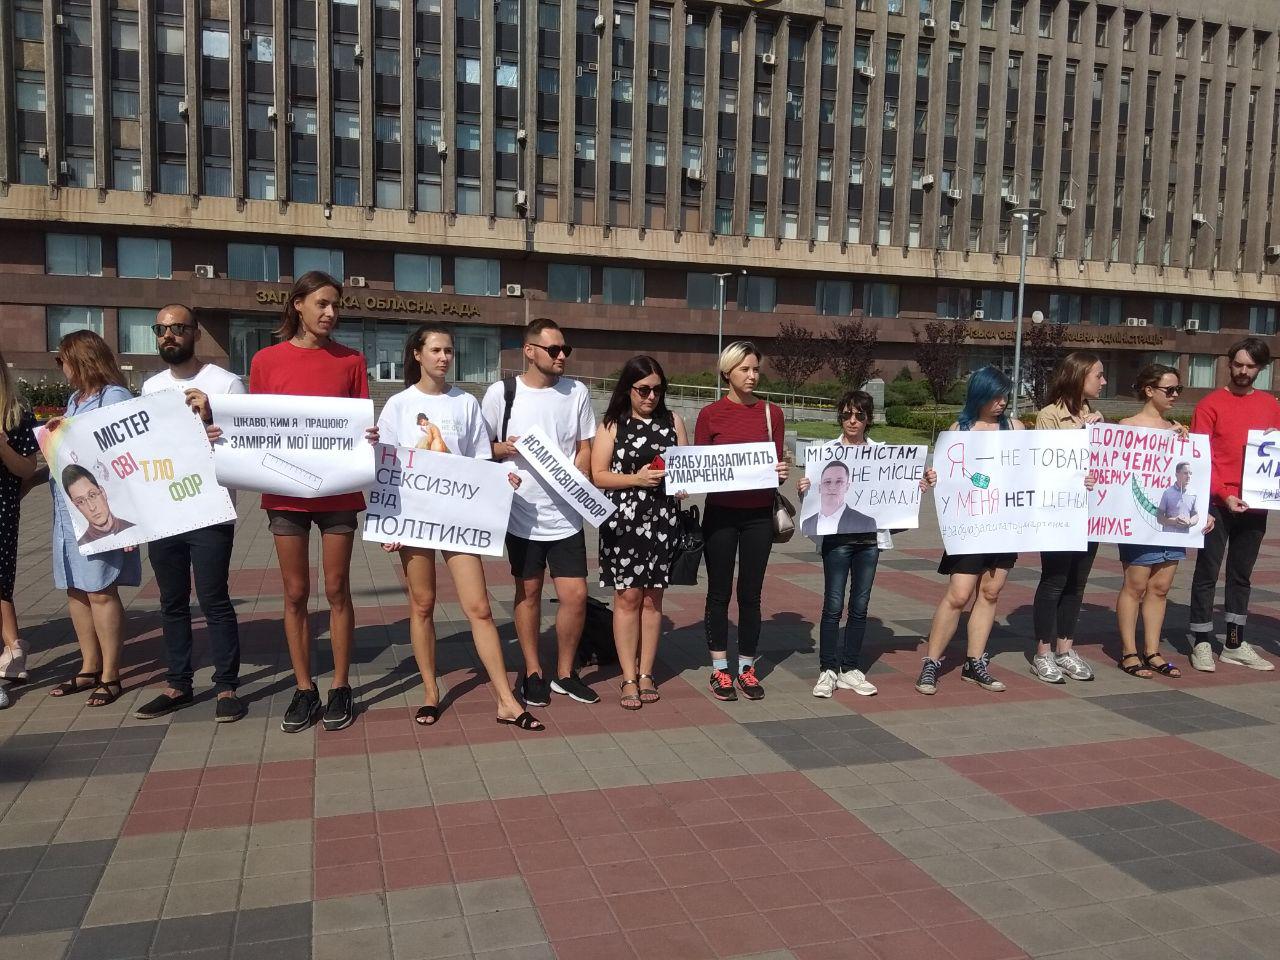 “Мое платье слишком короткое?”: в Запорожье мужчины в юбках вышли на митинг против Марченко